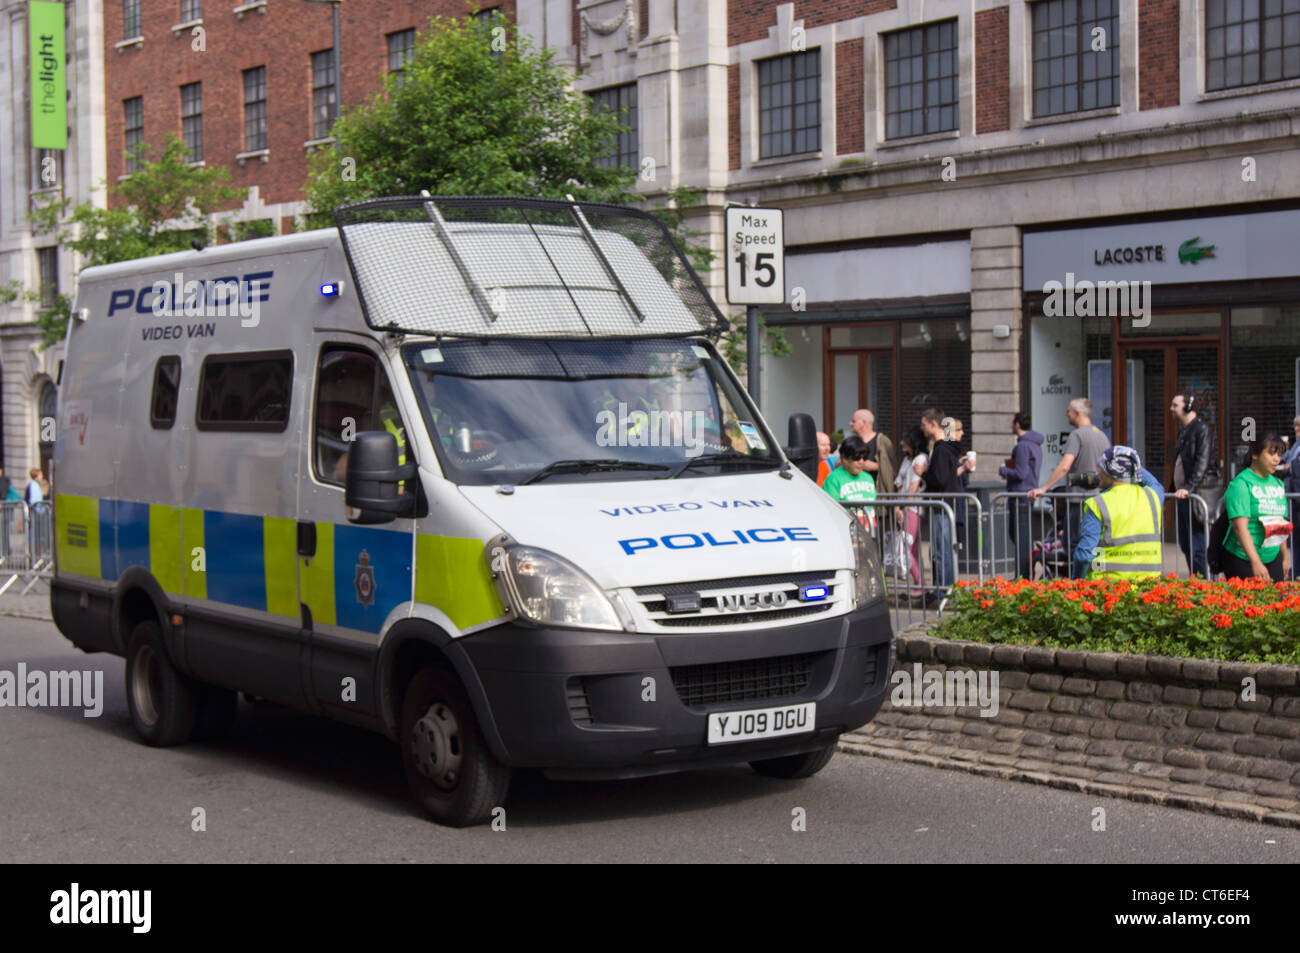 West Yorkshire police van in Leeds city center Stock Photo